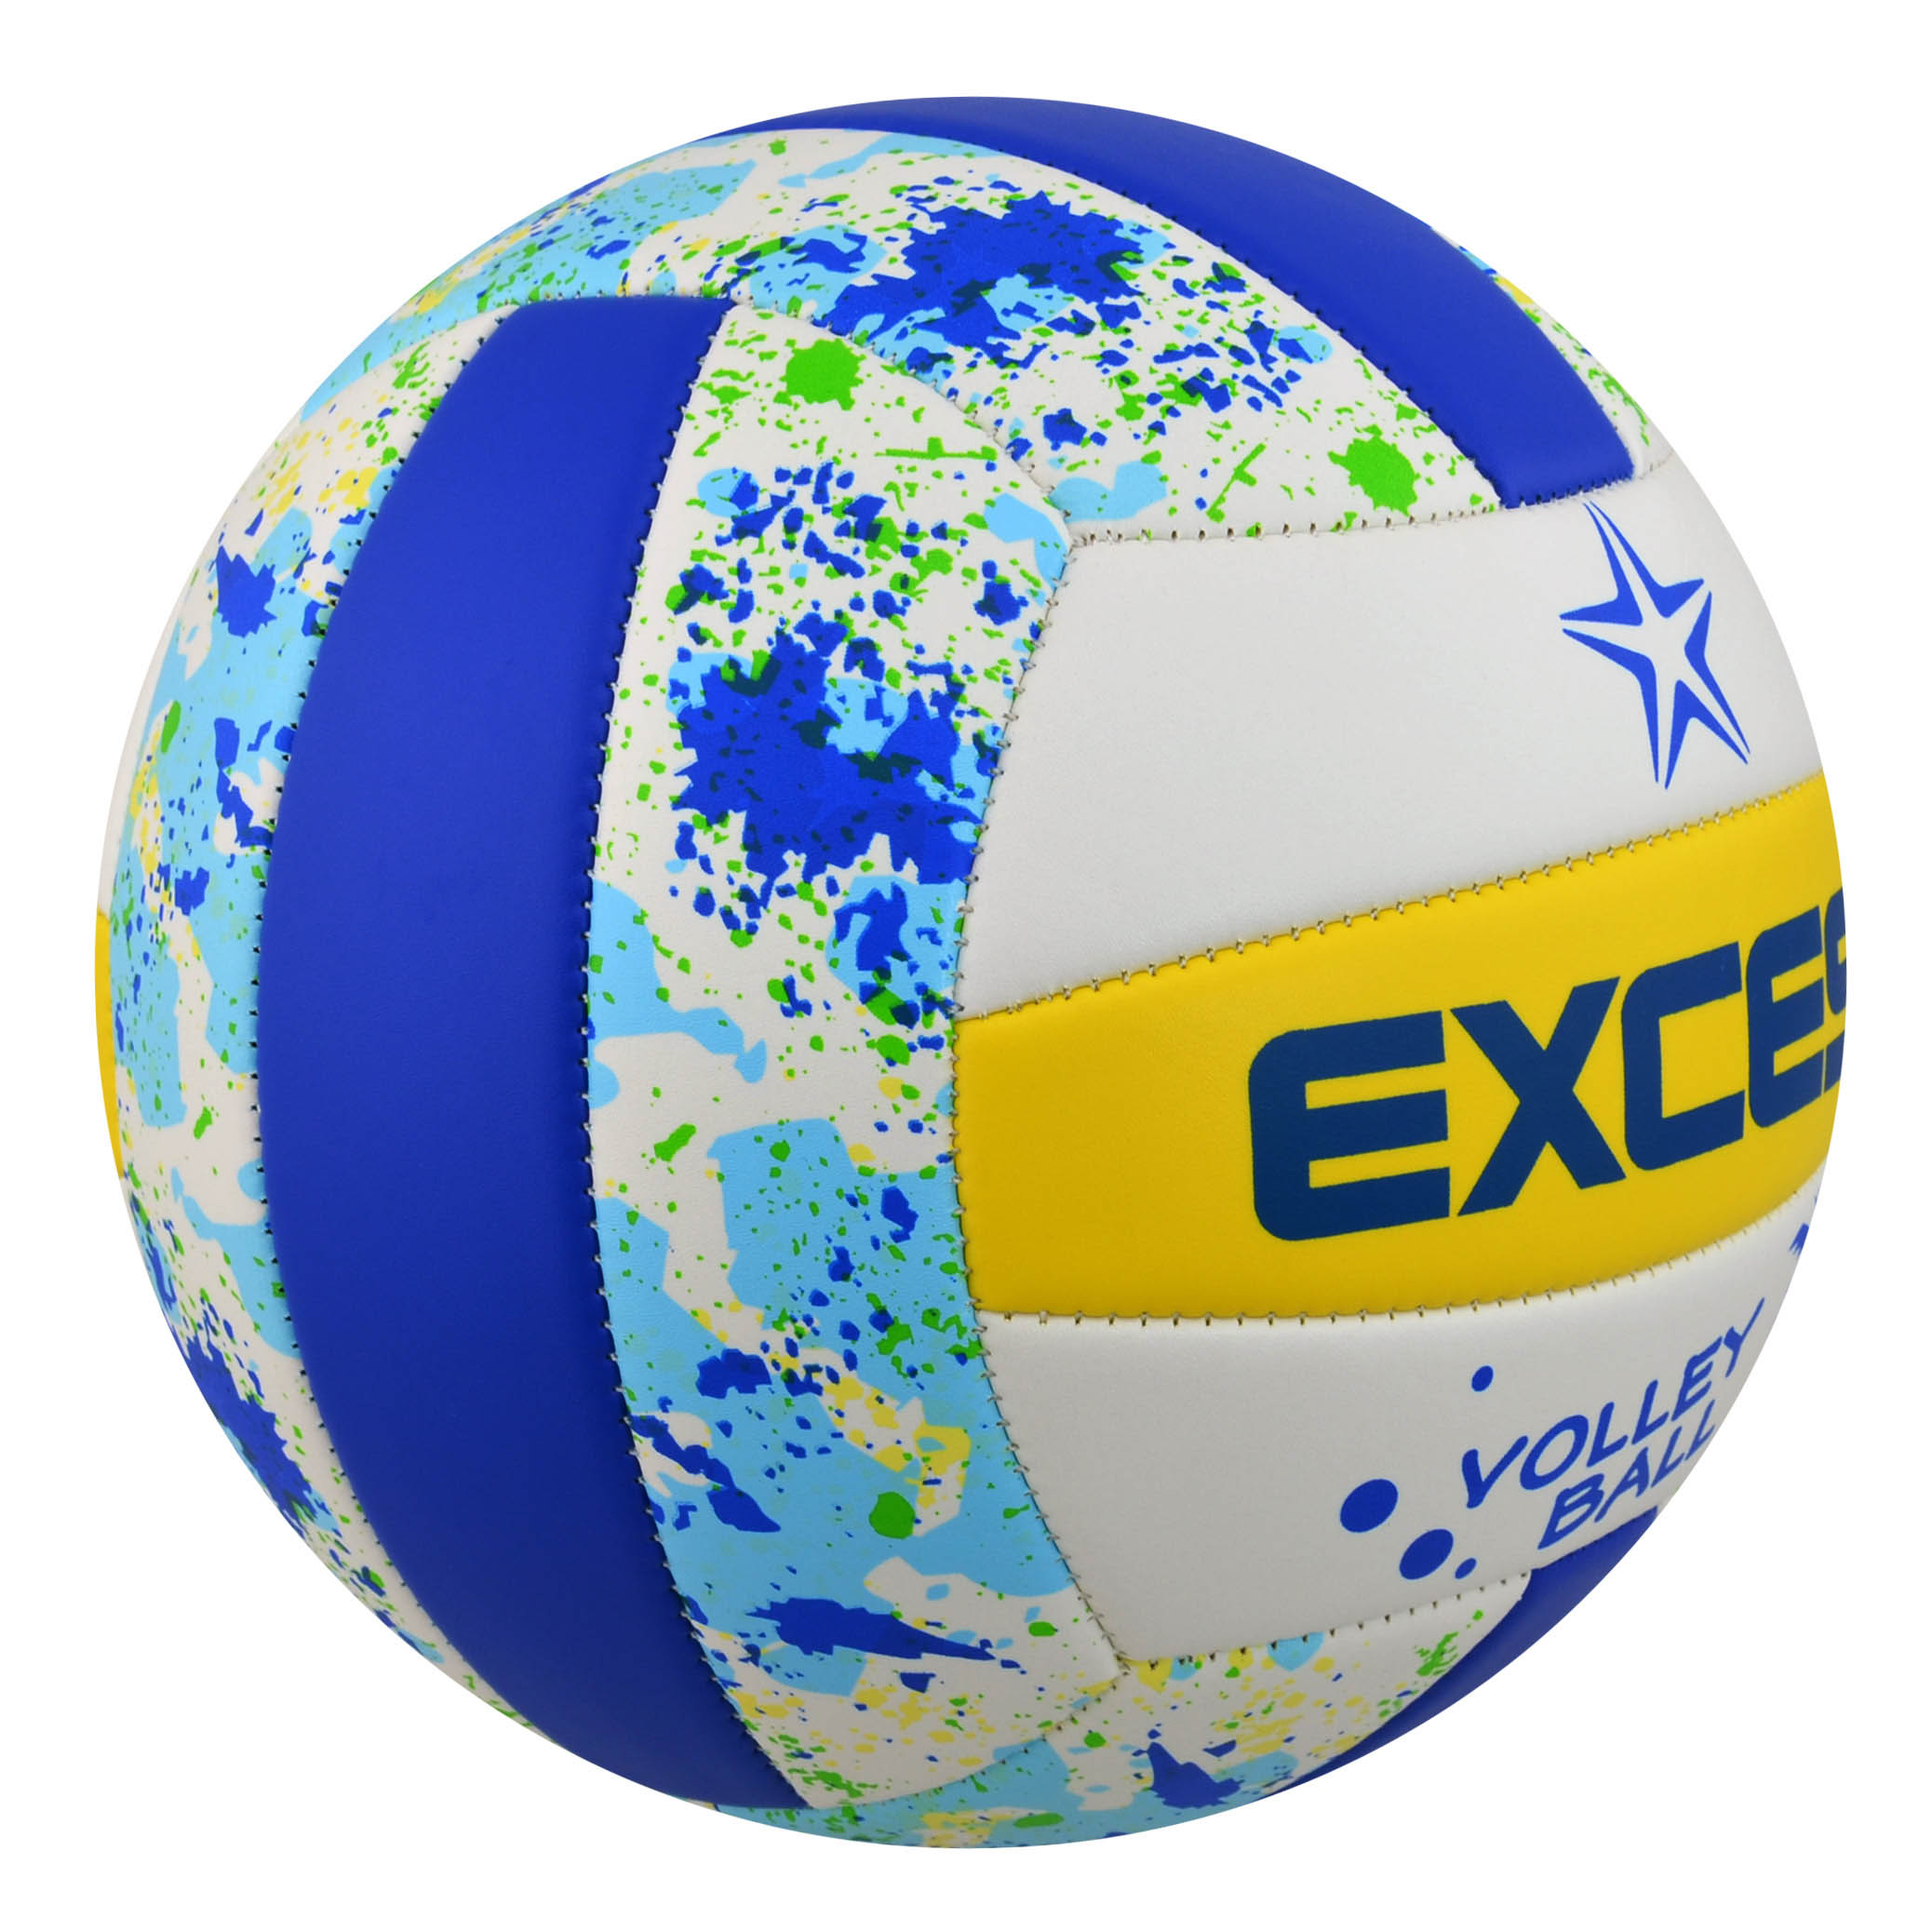 Chính hãng EXCESS yêu thể thao bóng chuyền trường tiểu học đào tạo Sử dụng bóng mềm bóng chuyền bãi biển